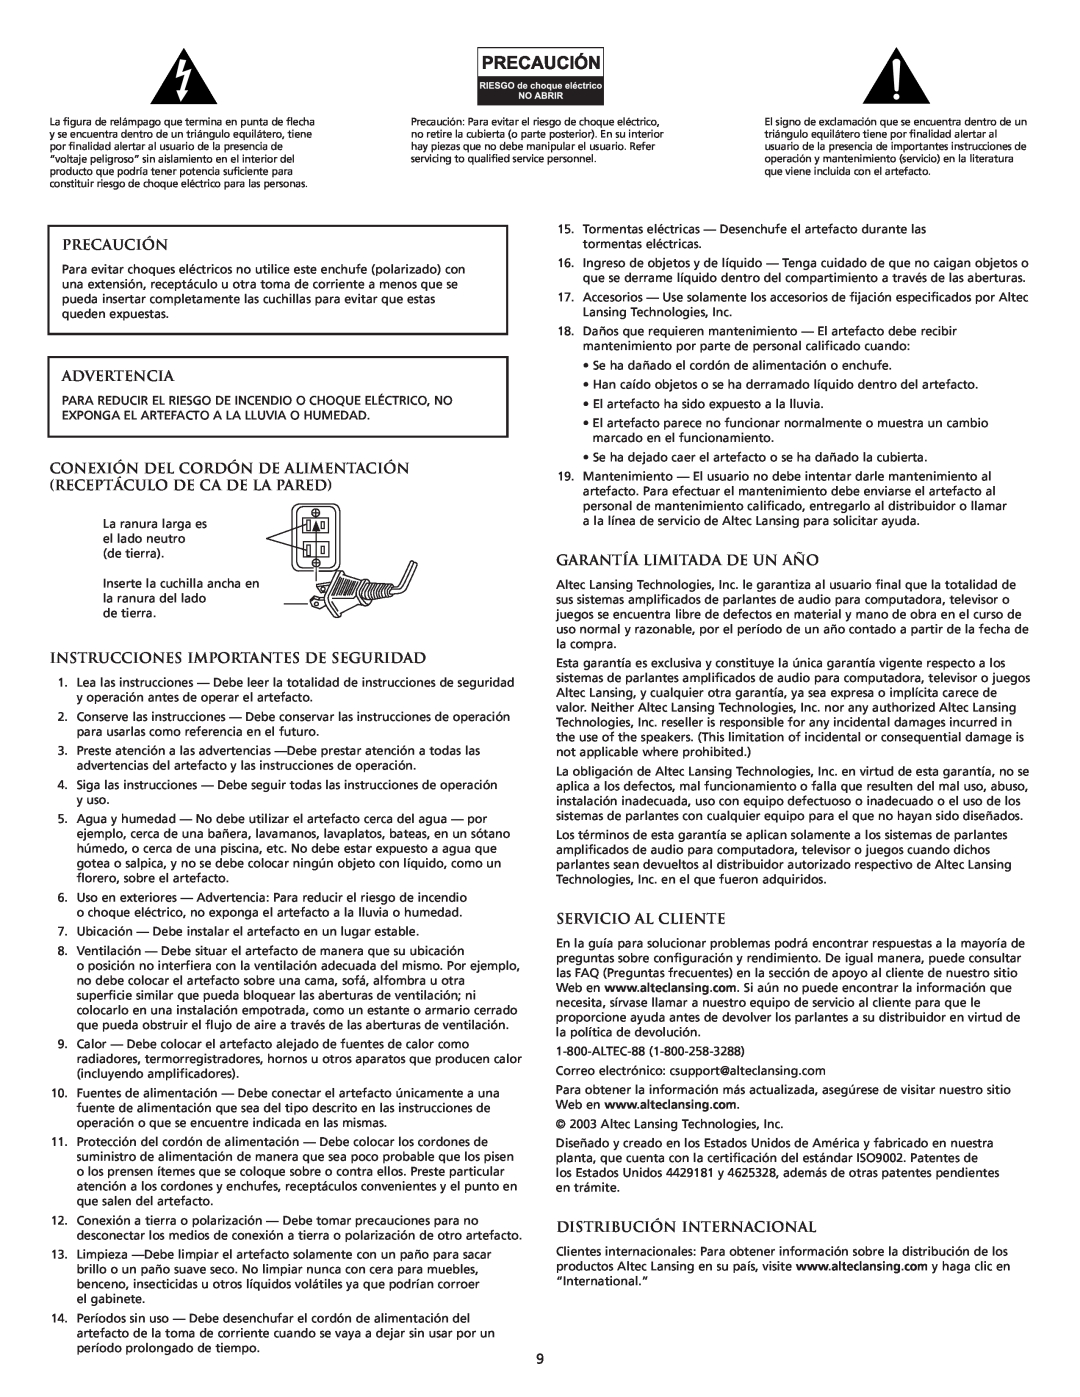 Altec Lansing VS2221 manual Precaución, Advertencia, Instrucciones Importantes De Seguridad, Garantía Limitada De Un Año 